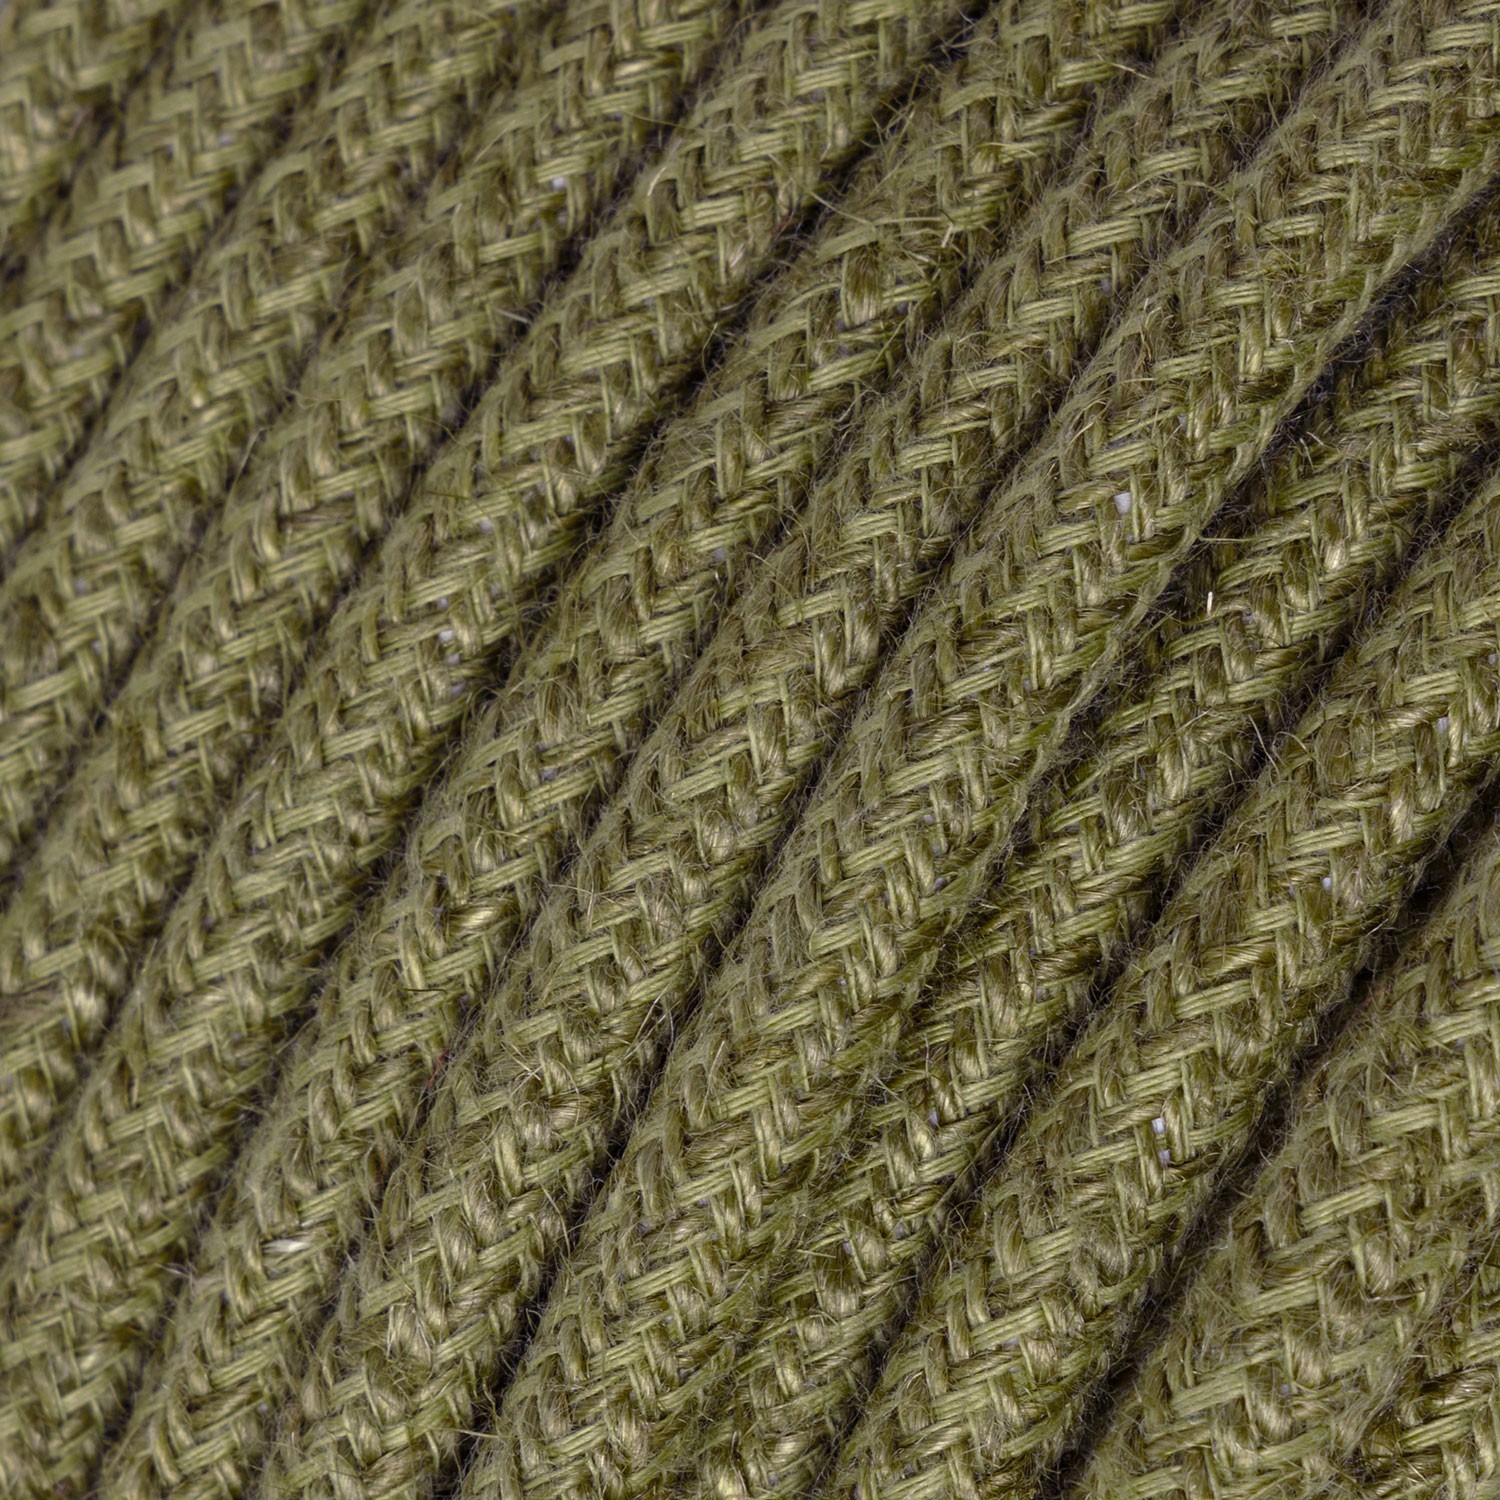 Rundt elektrisk kabel dækket af almindelig brun RN26 jute med bark